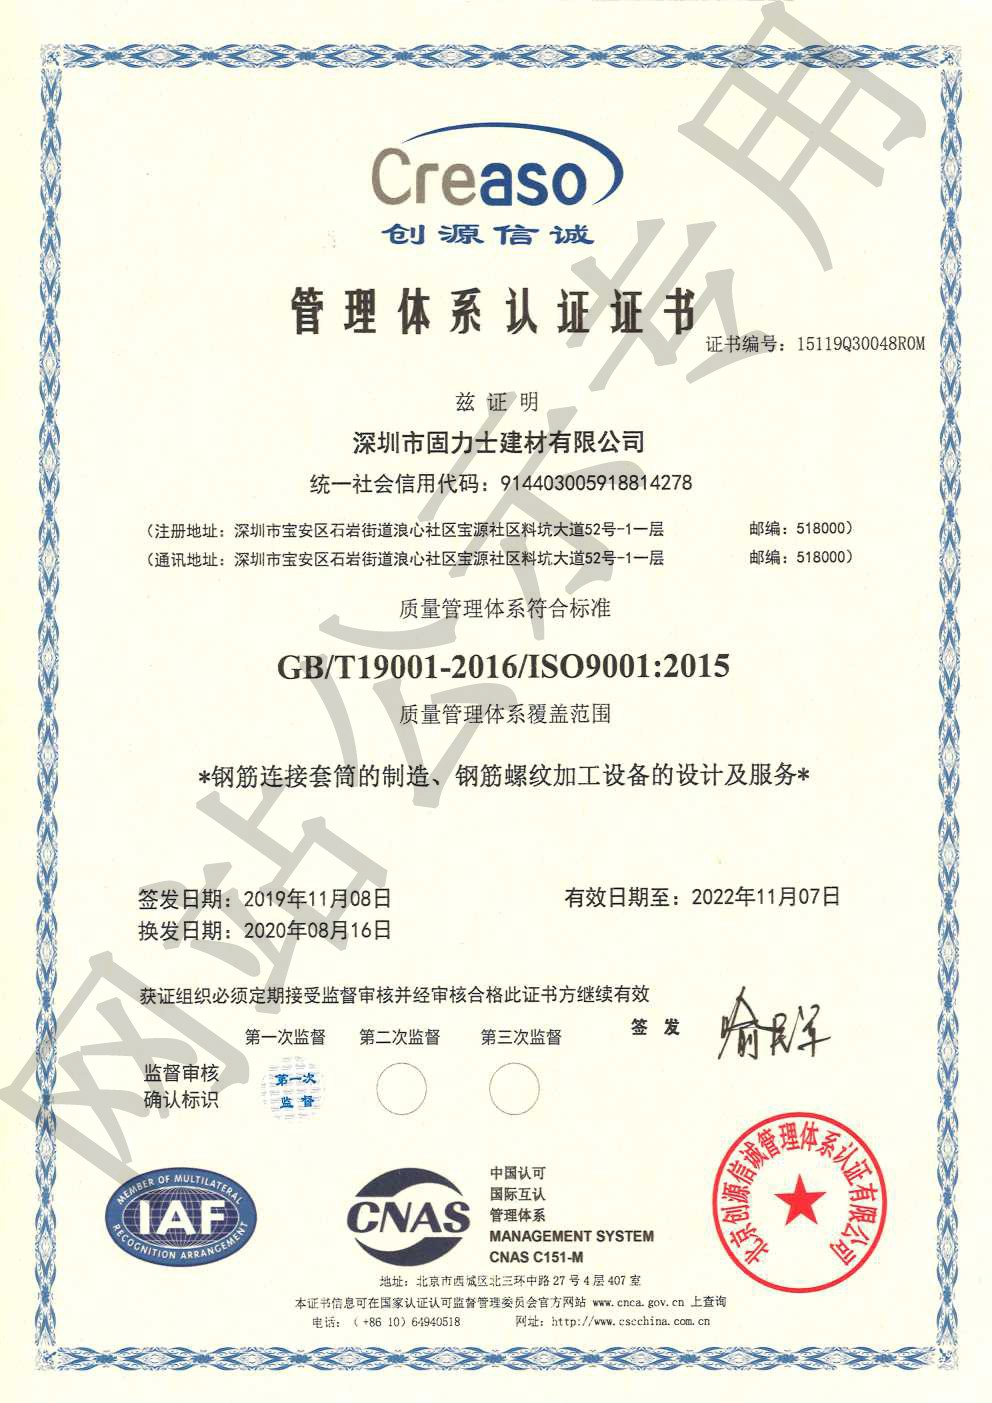 革吉ISO9001证书